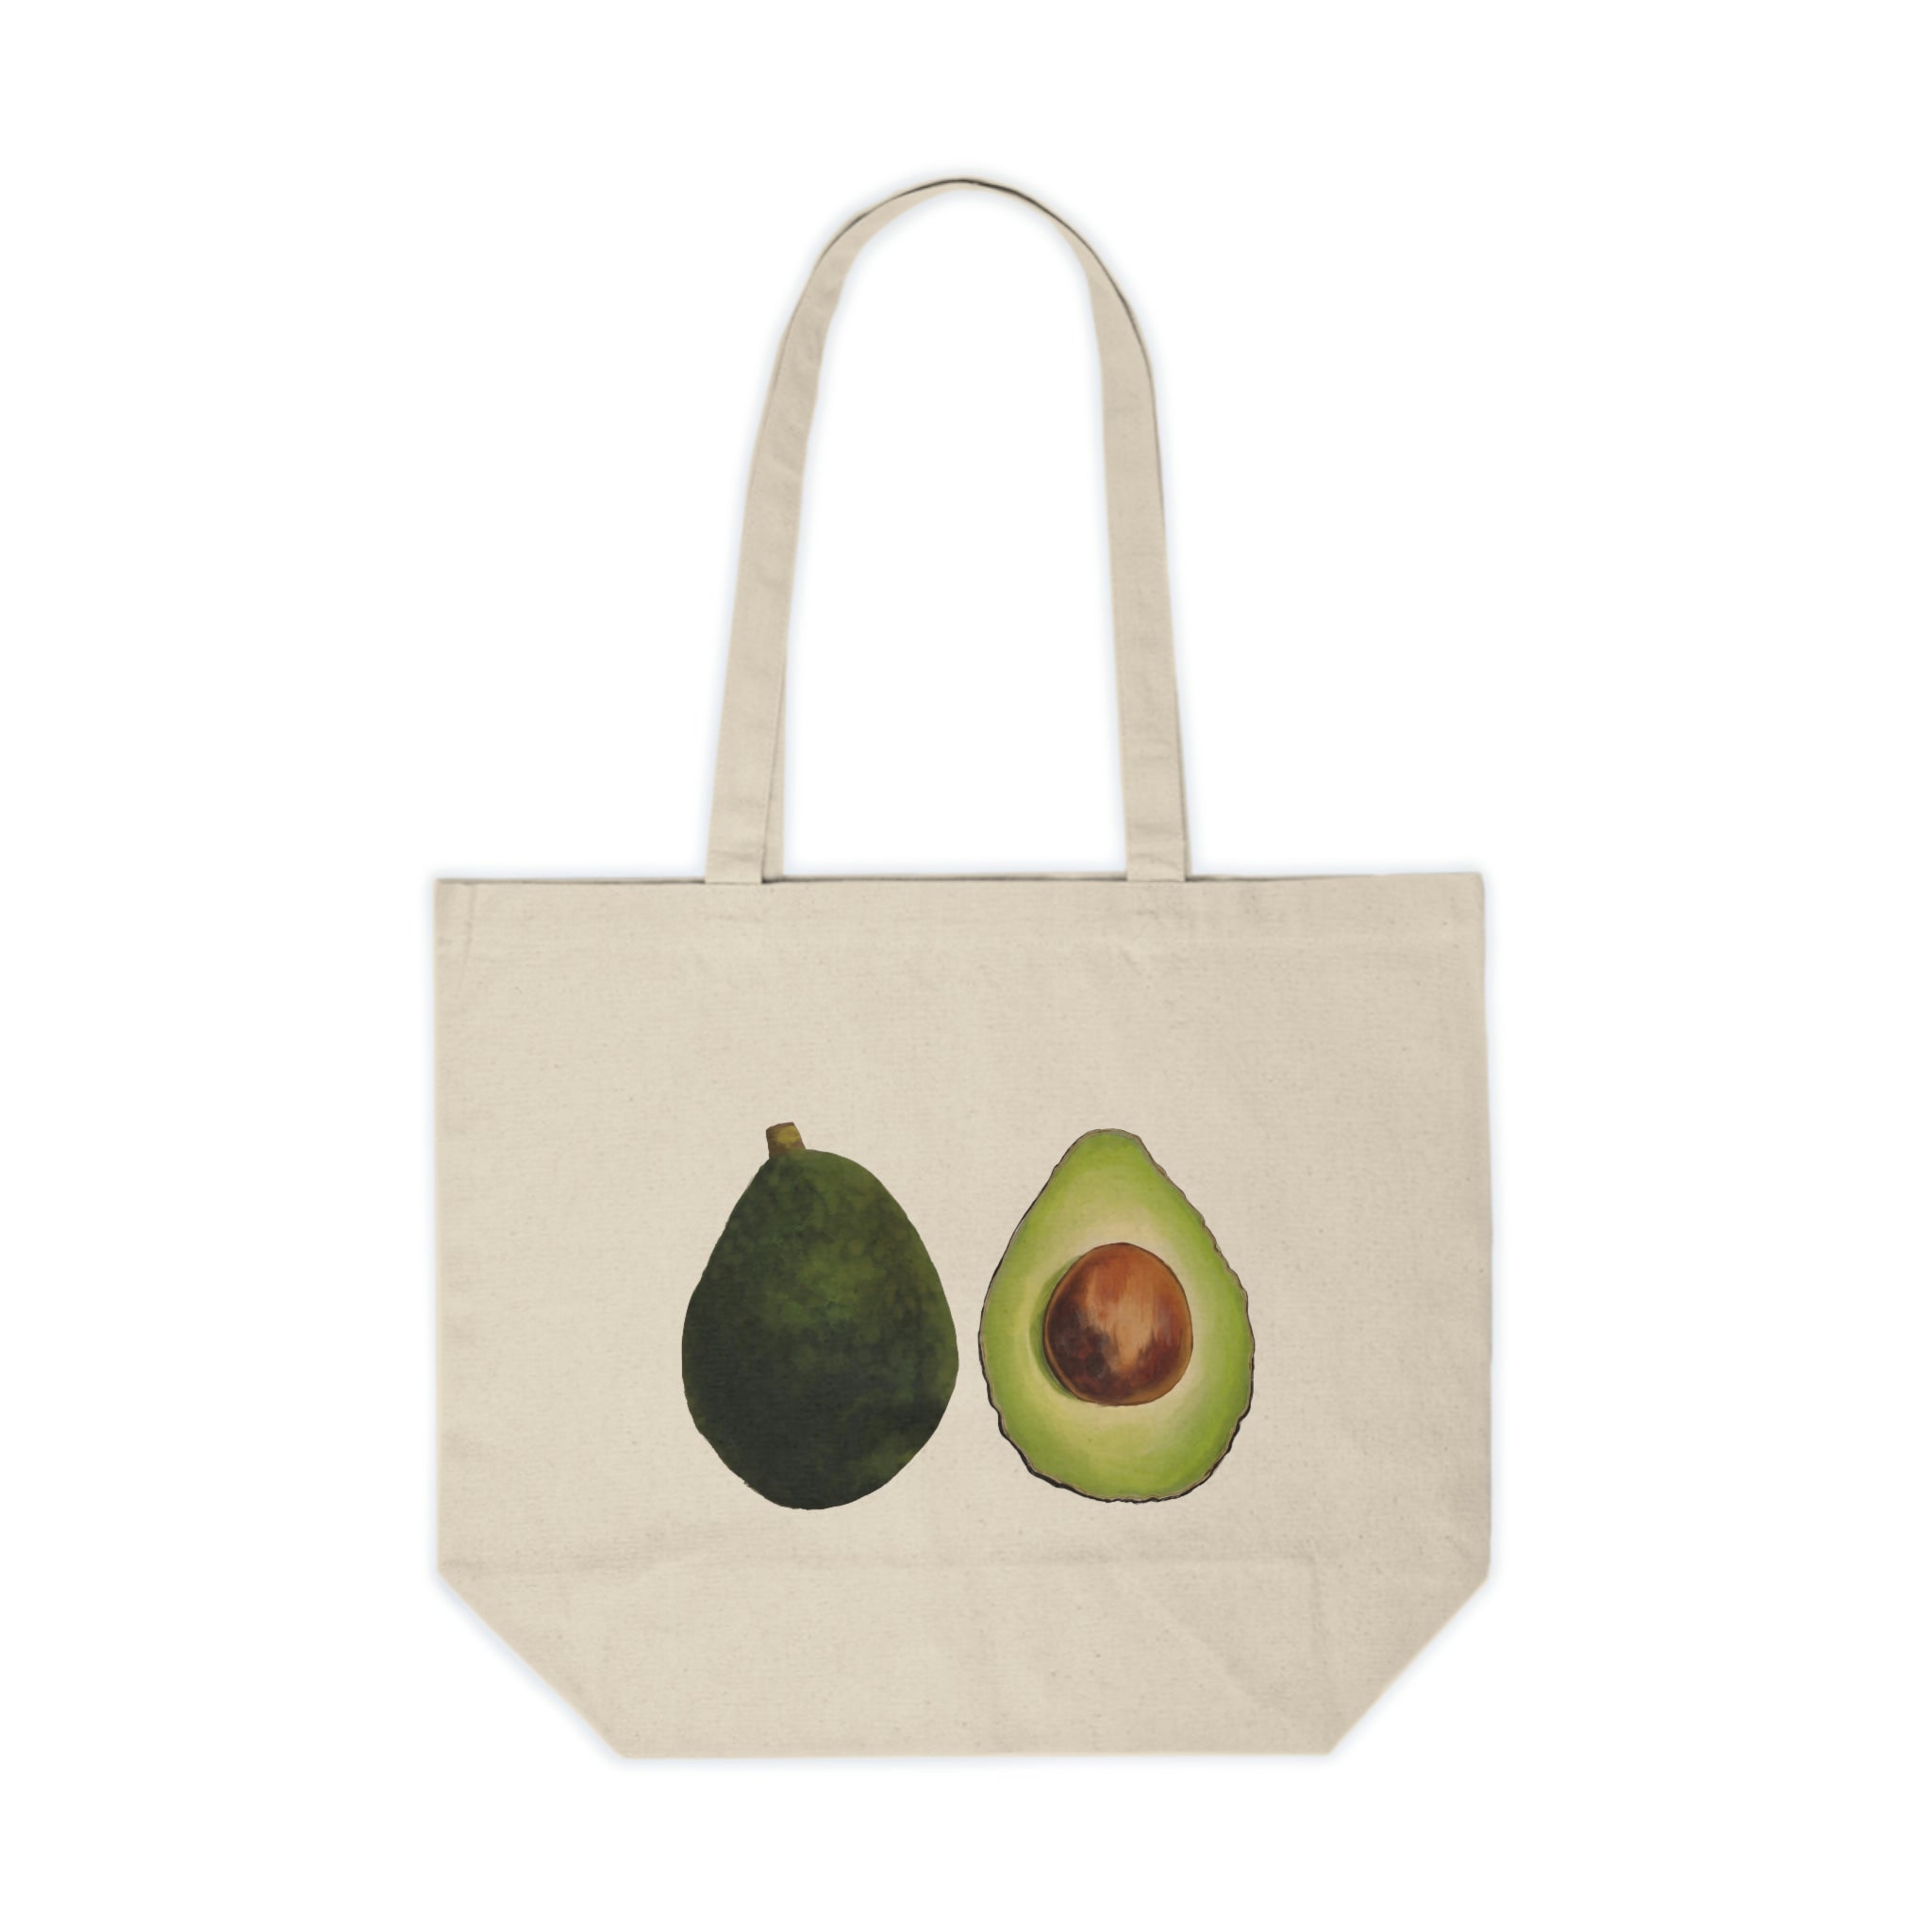 A bag of Avocados 